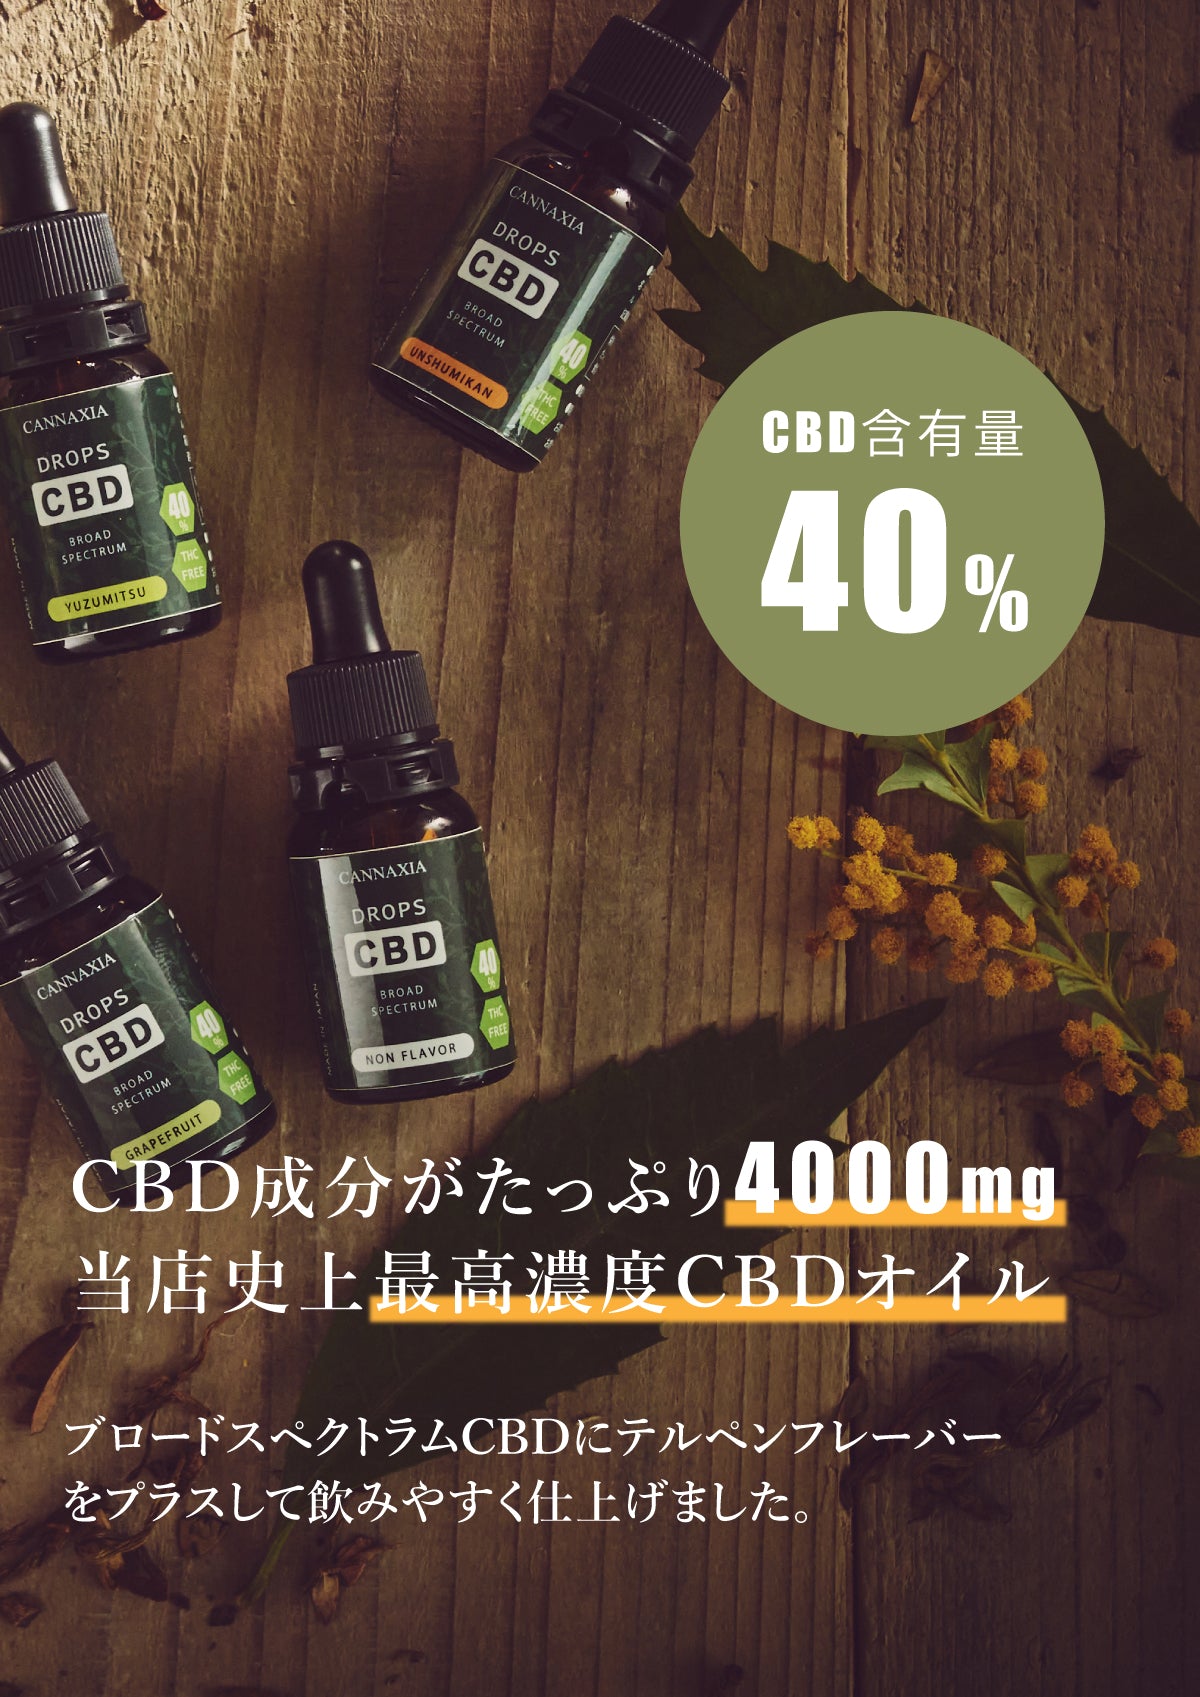 CANNAXIA カンナシア CBDオイル 高濃度CBD40% 4000mg配合 容量 10ml ブロードスペクトラム 日本製